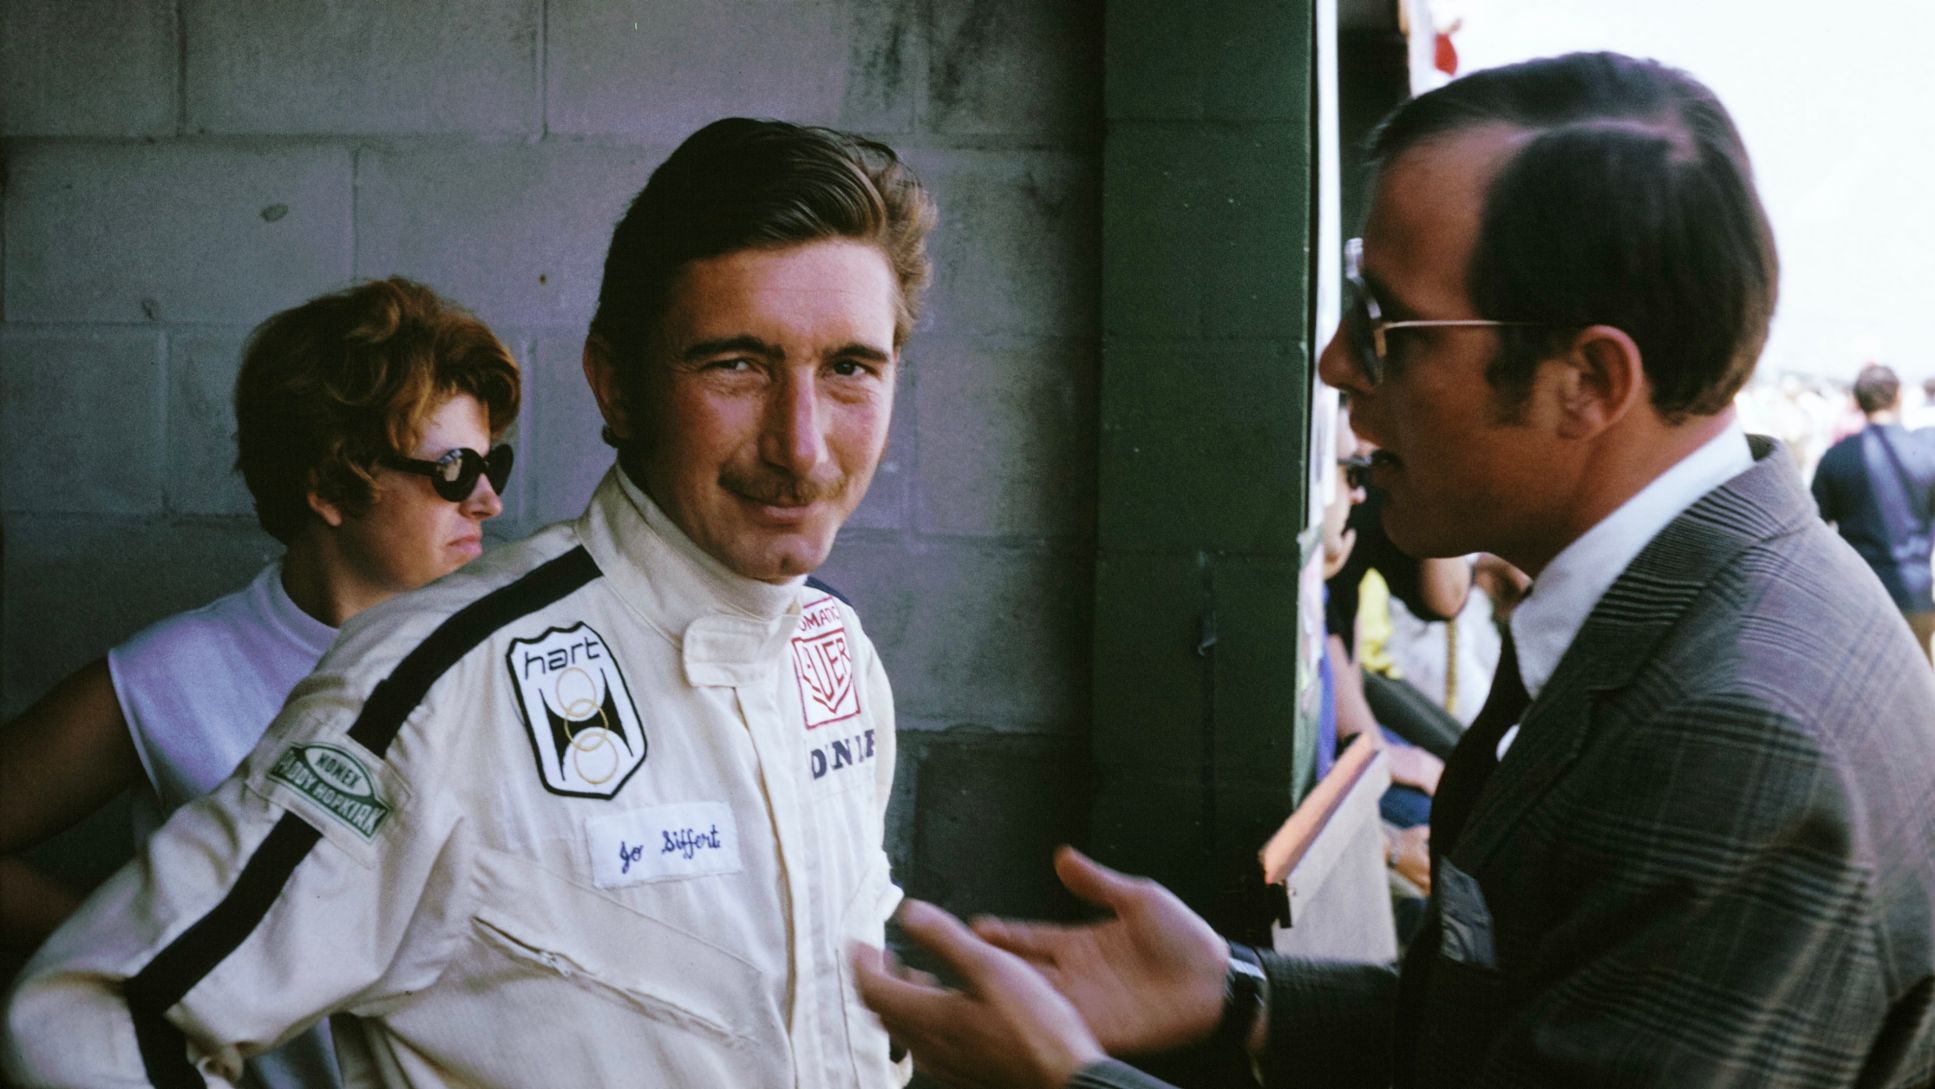 Jo Siffert, Rico Steinemann, Sebring, 1969, Porsche AG